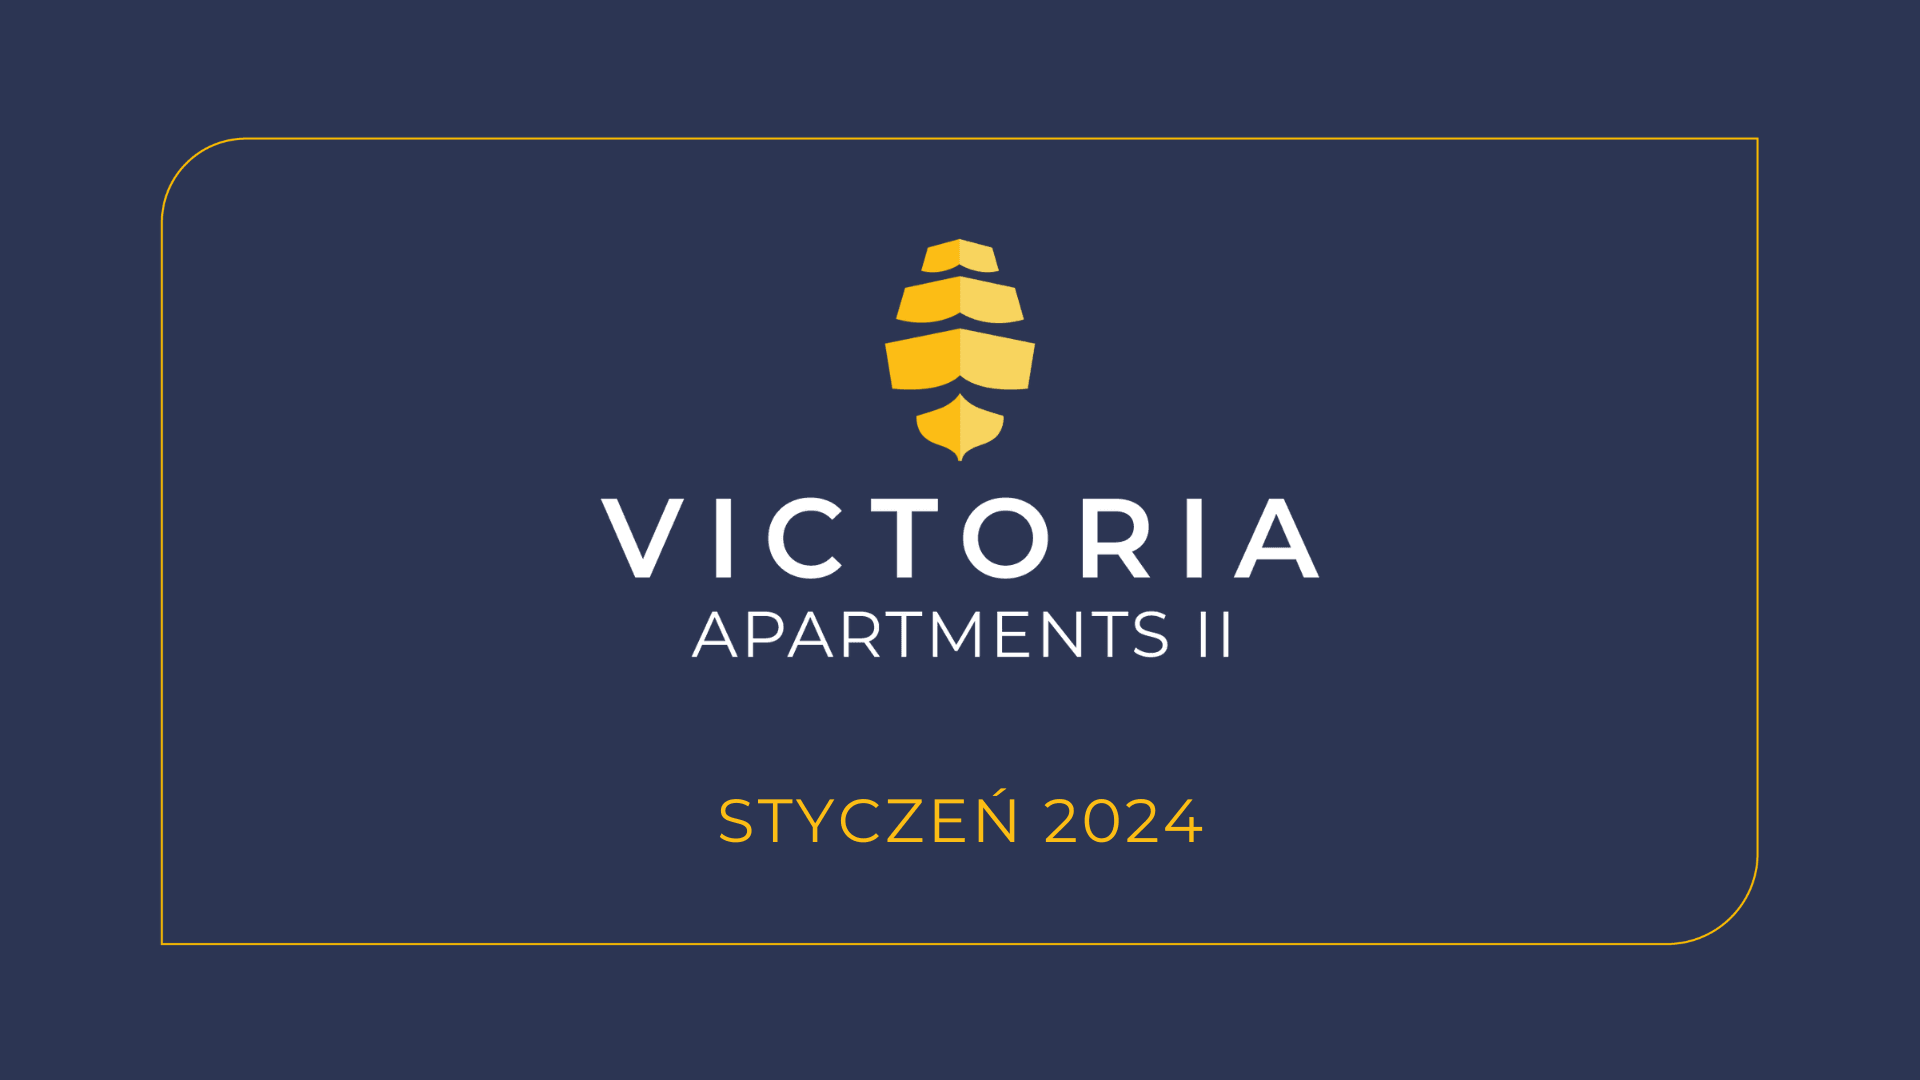 Dziennik budowy, Dziennik budowy Victoria Apartments II w Szczecinie - styczeń 2024